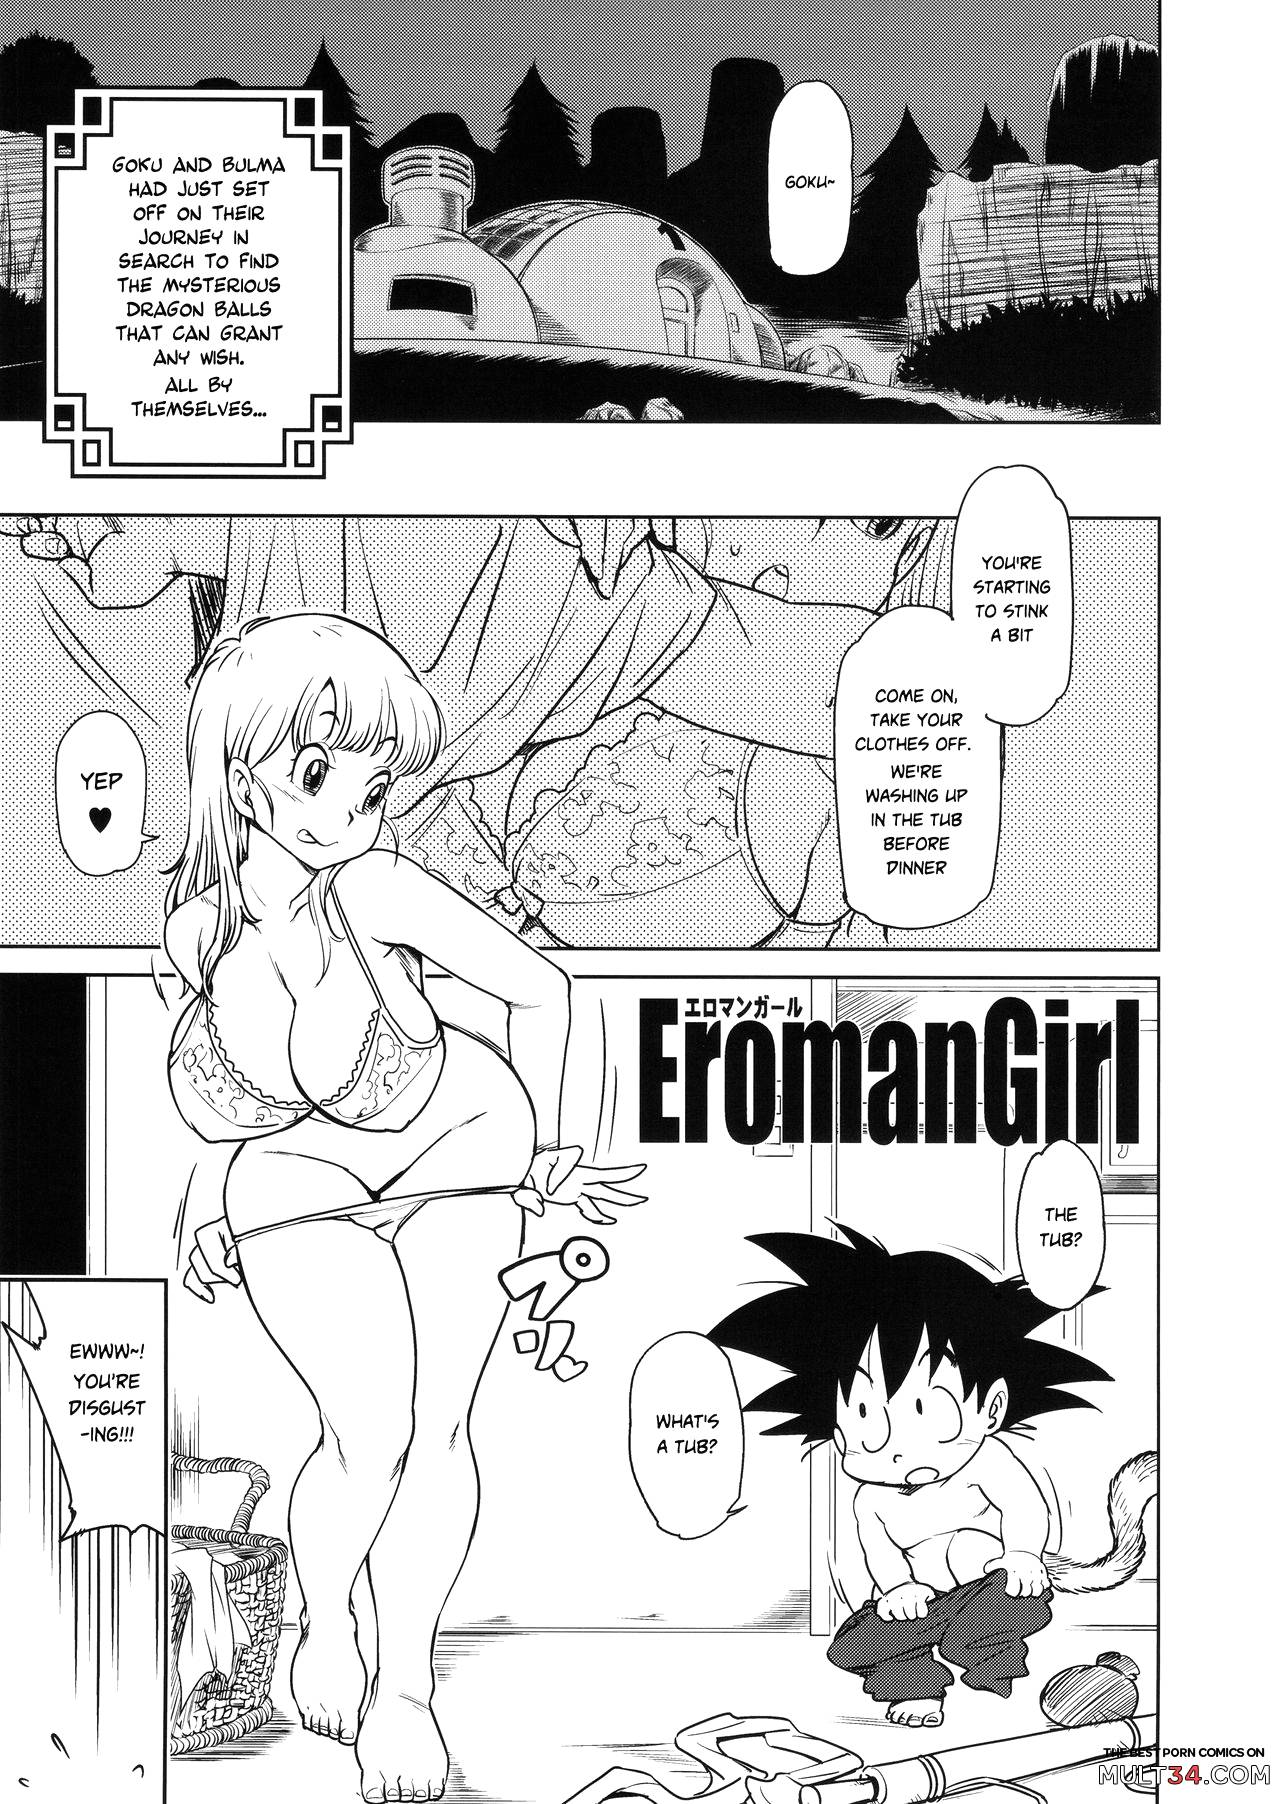 Goku and bulma porn comic